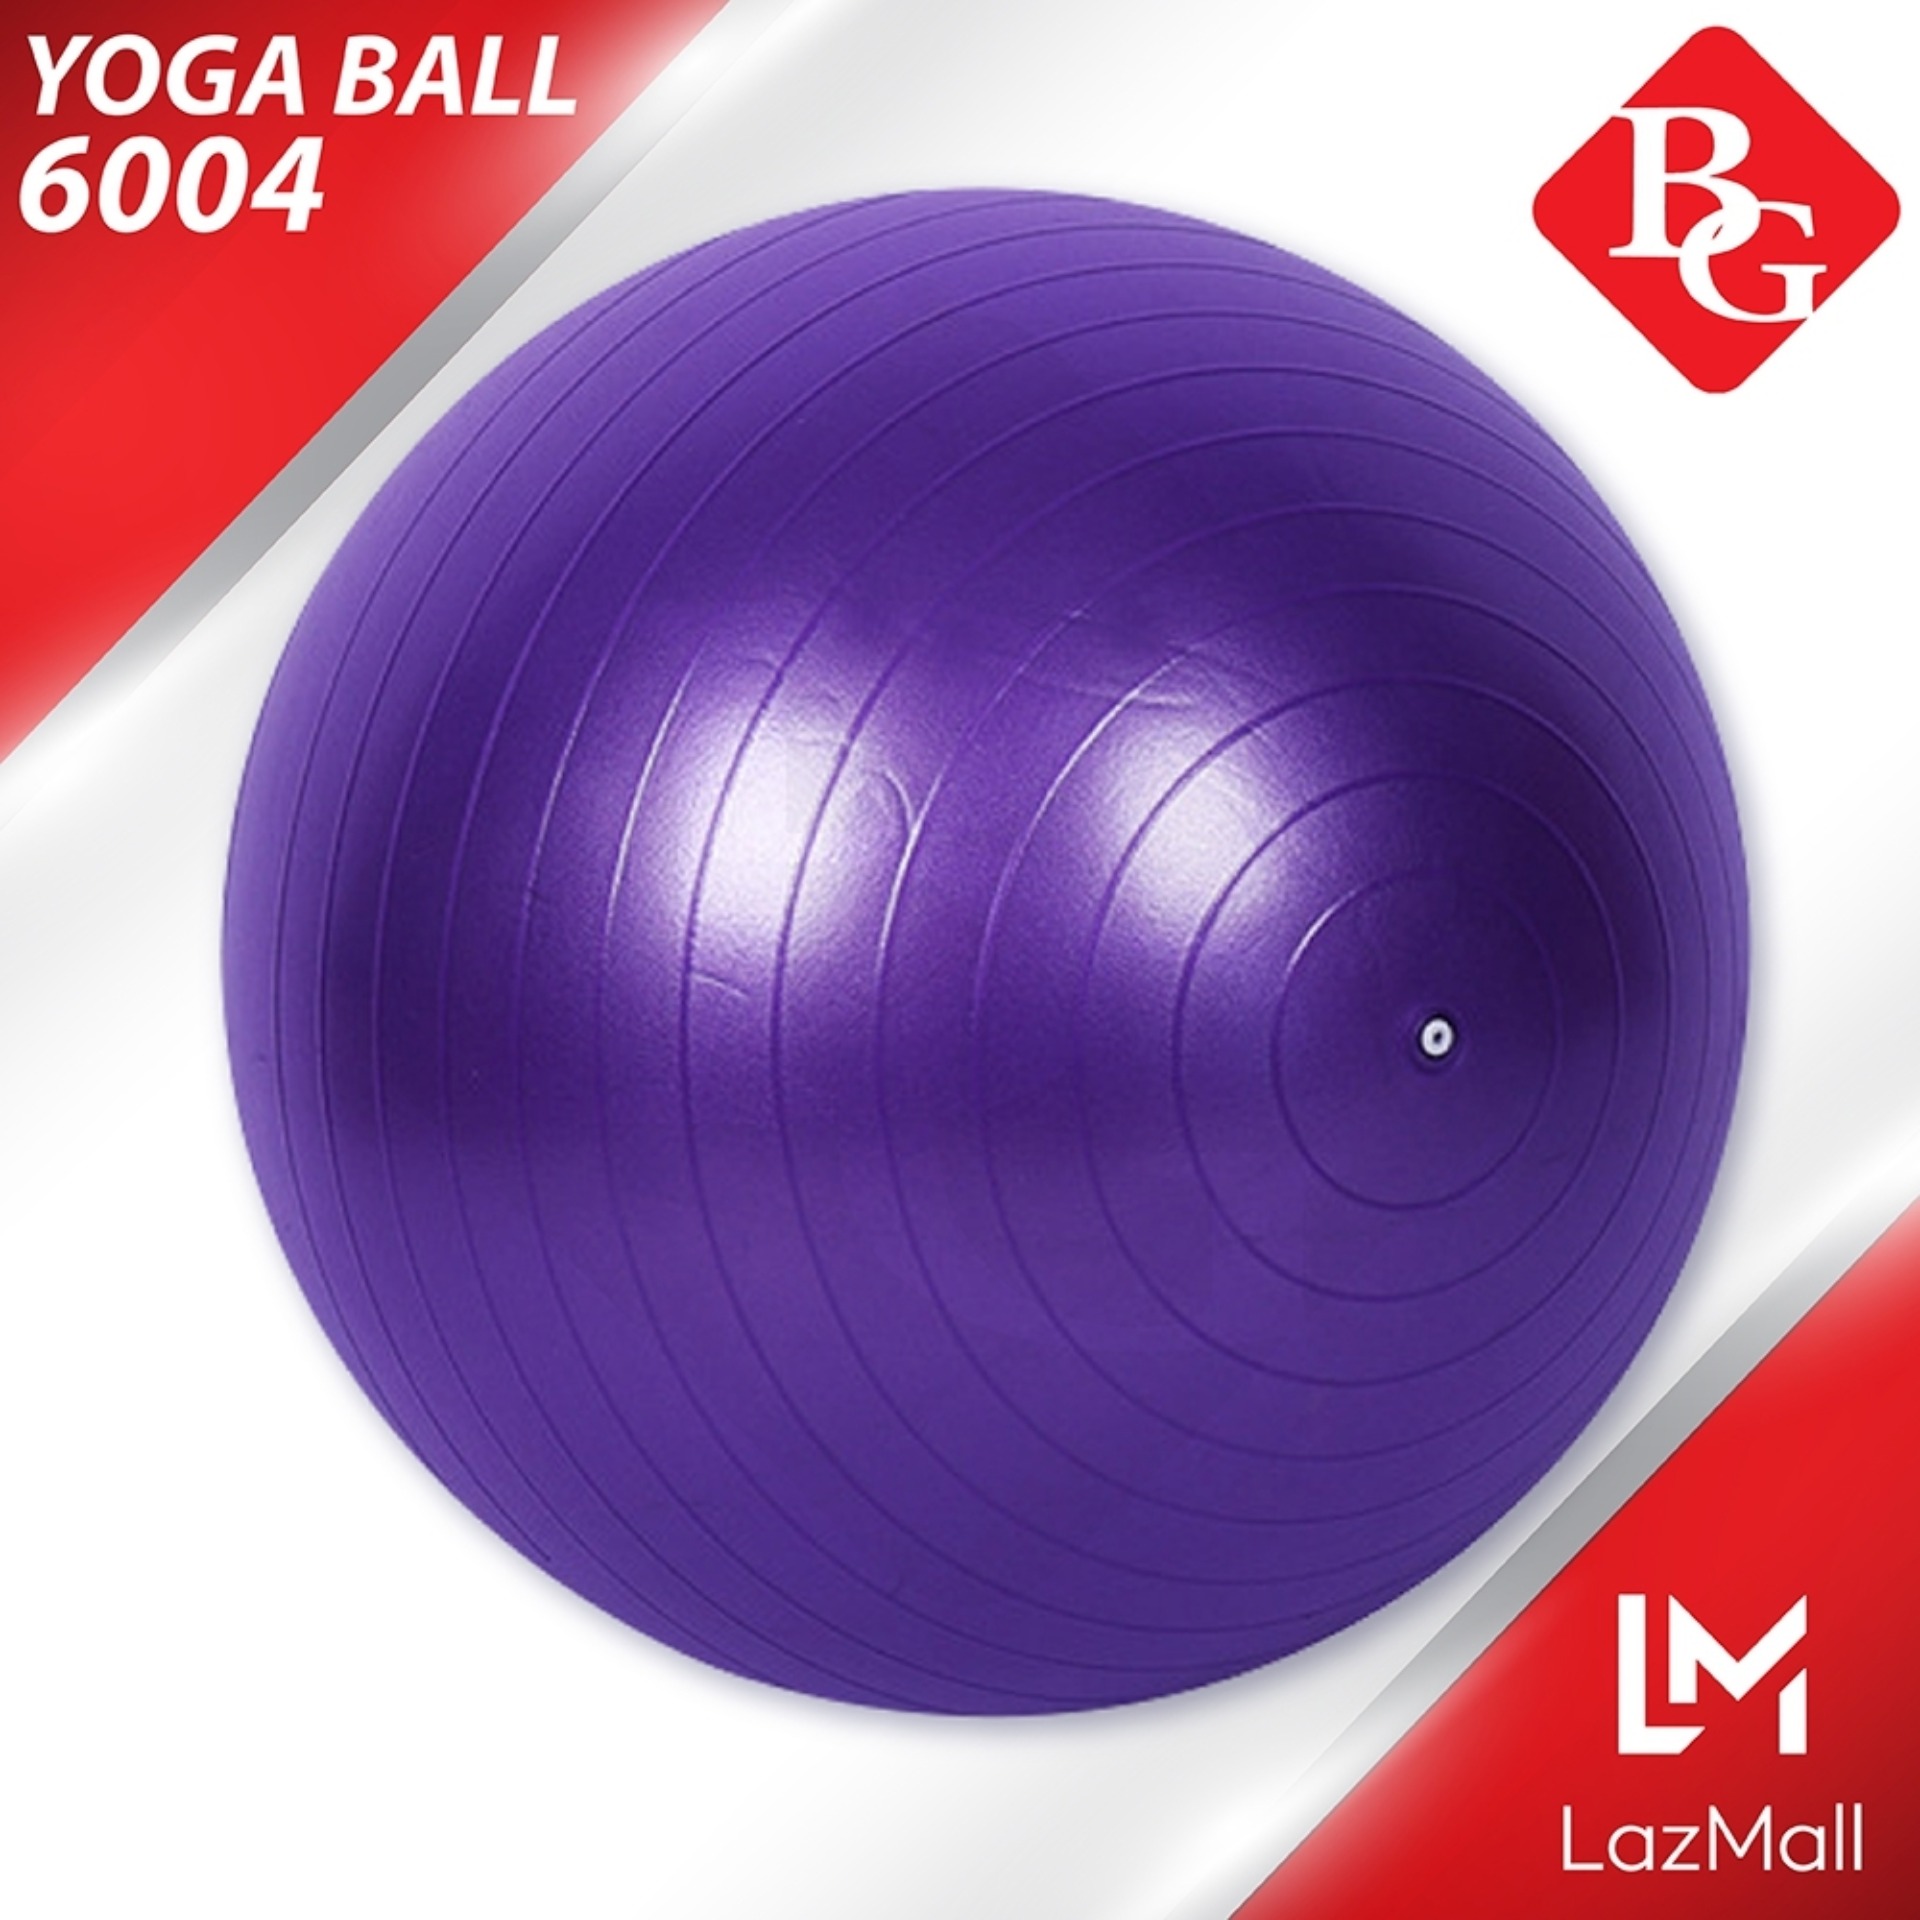 B&G ลูกบอลโยคะ 65 ซม. Yoga Ball รุ่น 6004 (Purple) แถมฟรี ที่สูบลม